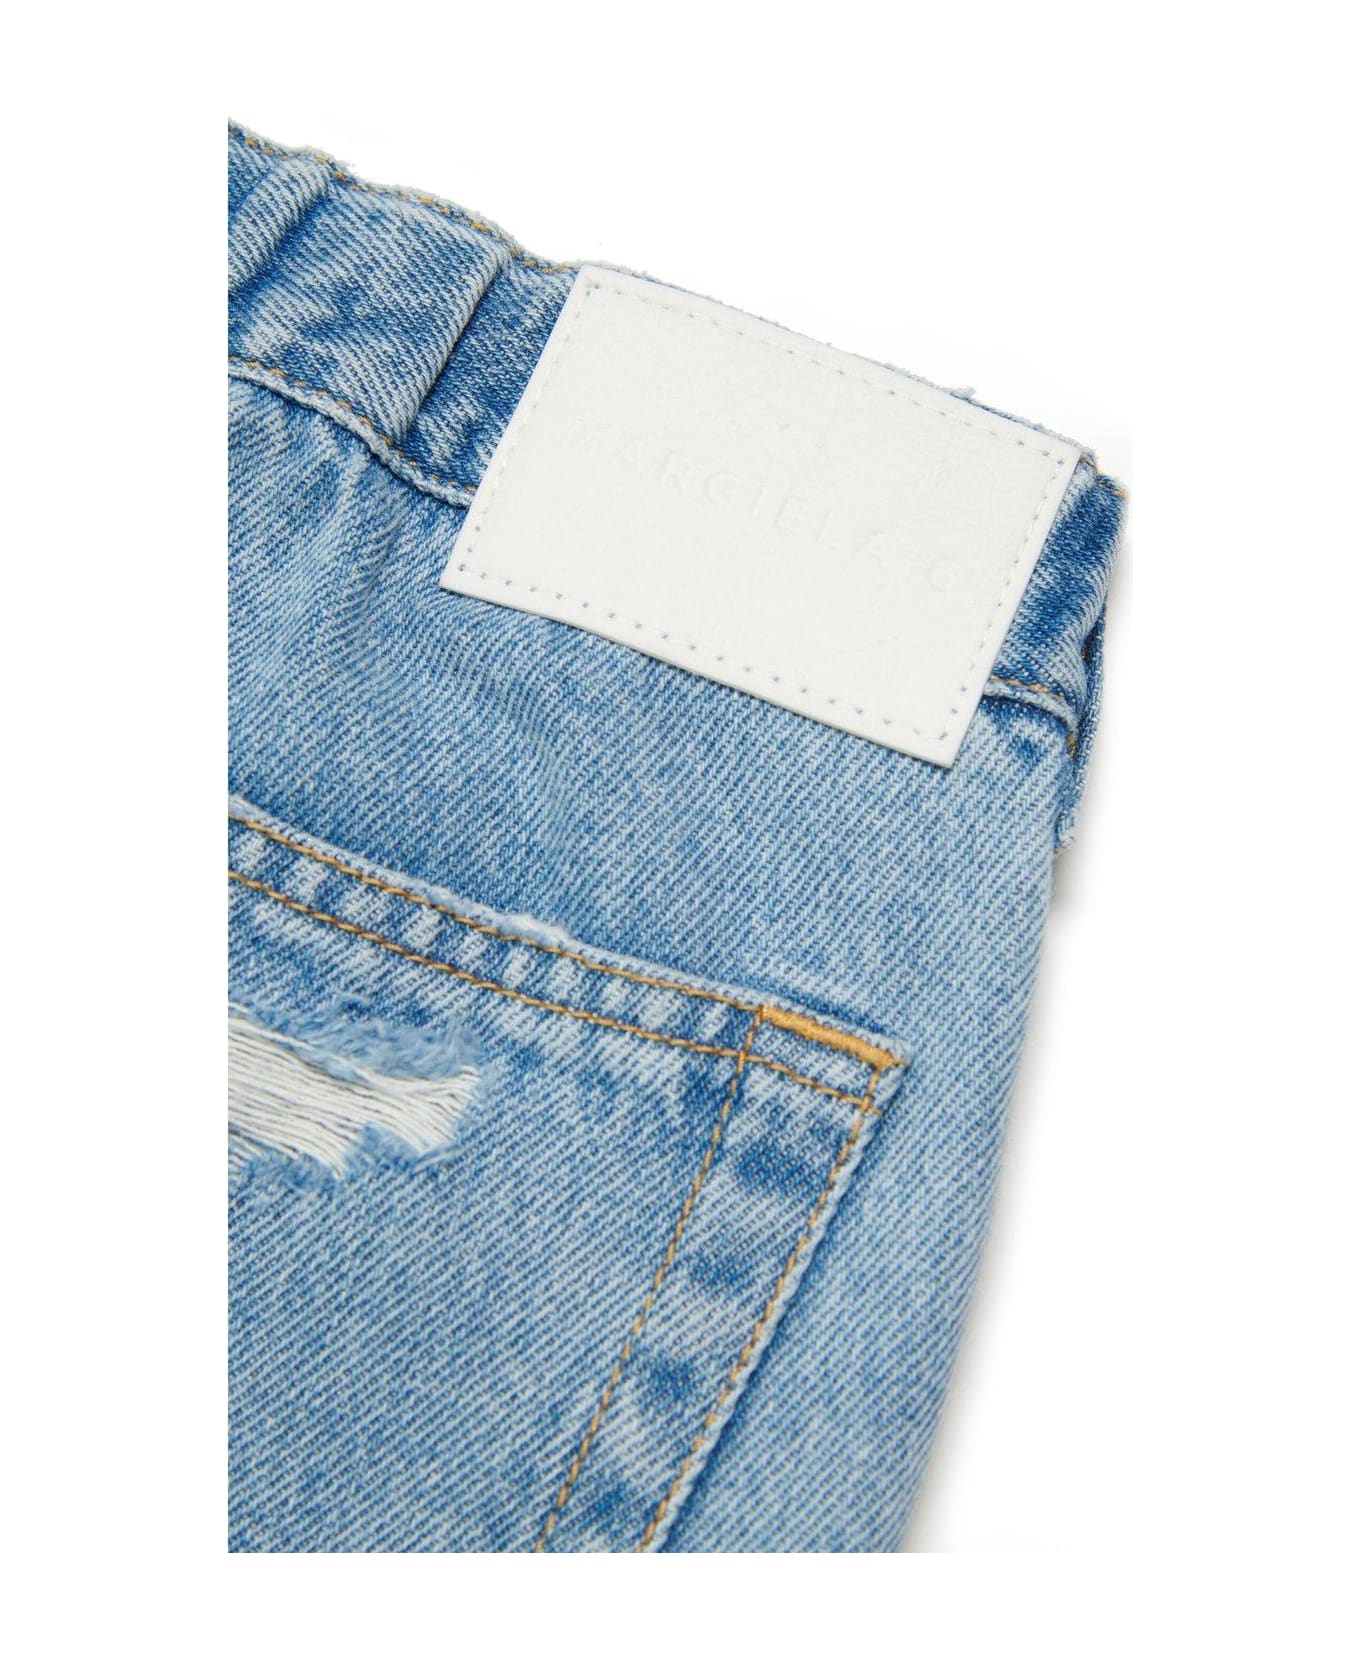 MM6 Maison Margiela Distressed Jeans - Blue